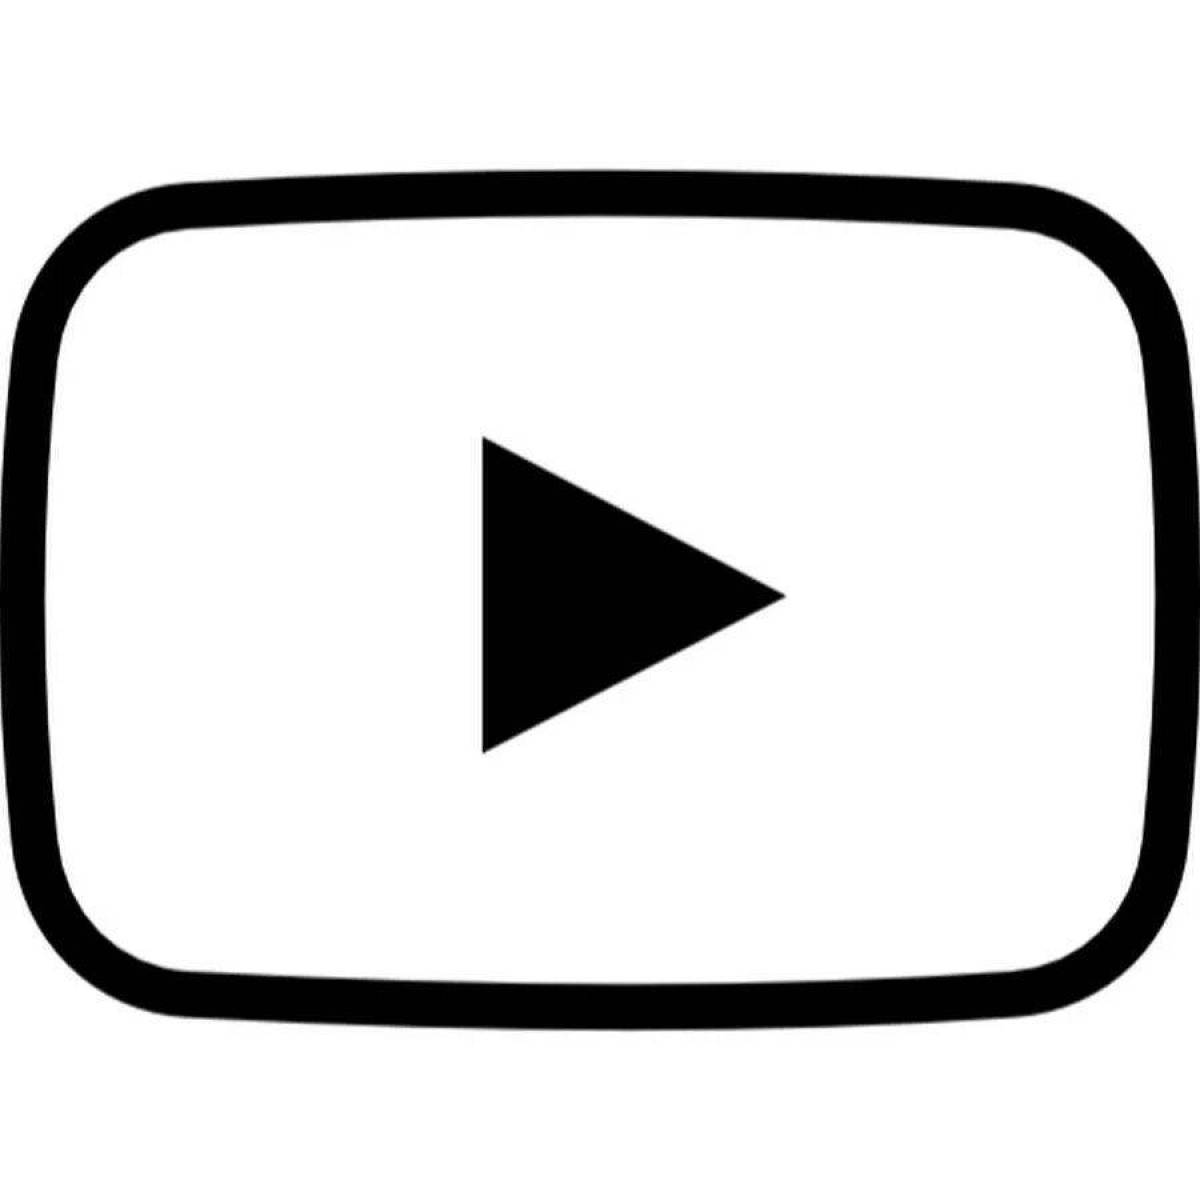 Привлекательная страница раскраски логотипа youtube